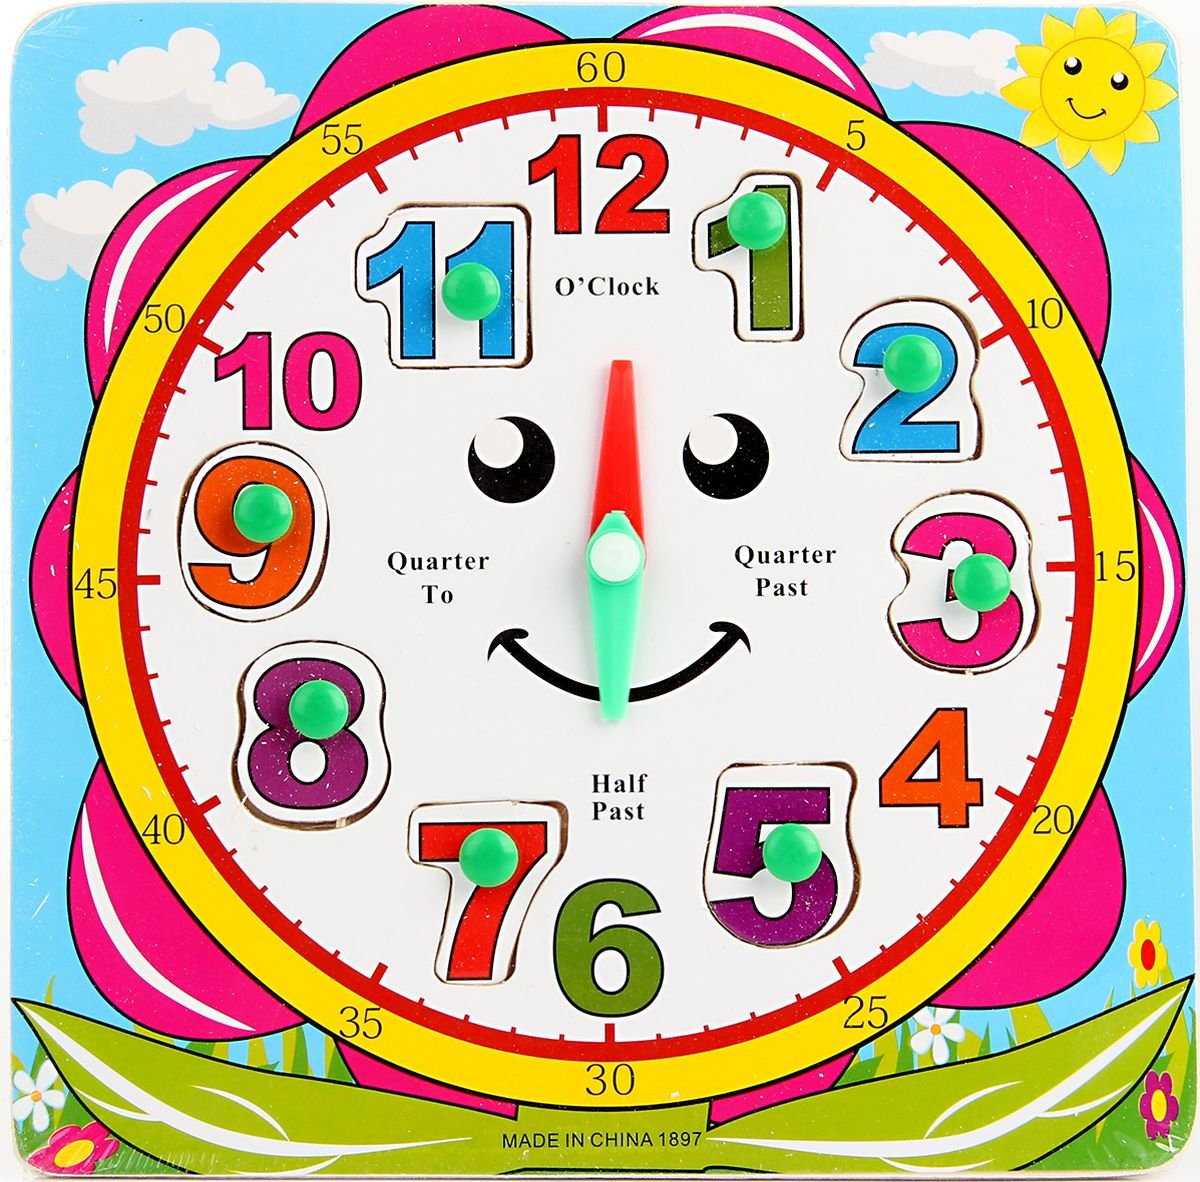 Игра с часами для детей. Часы обучающие для детей. Часы игровые для детей. Часы для дошкольников. Учим часы с детьми.